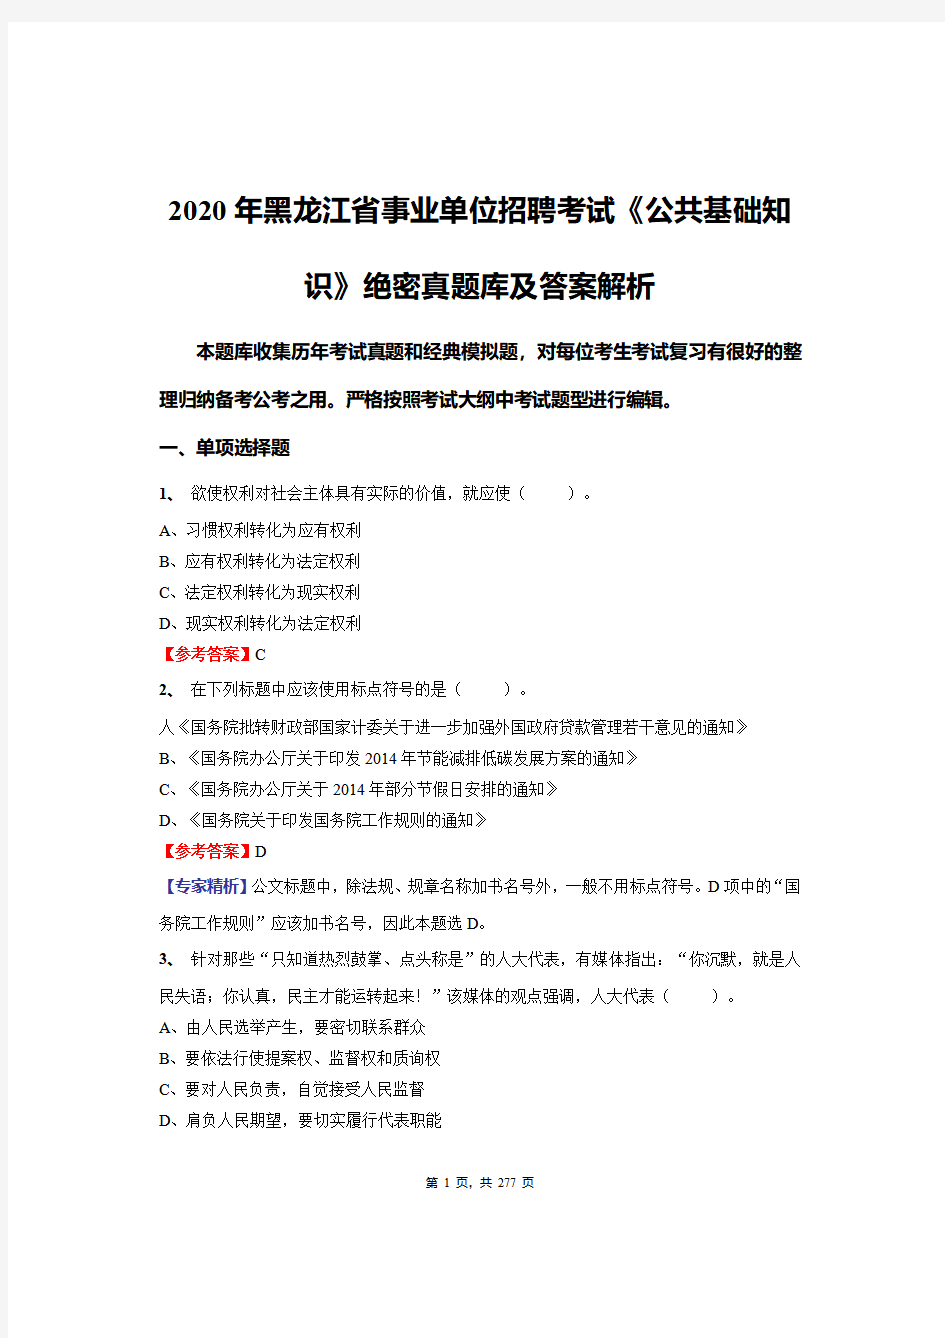 2020年黑龙江省事业单位招聘考试《公共基础知识》绝密真题库及答案解析